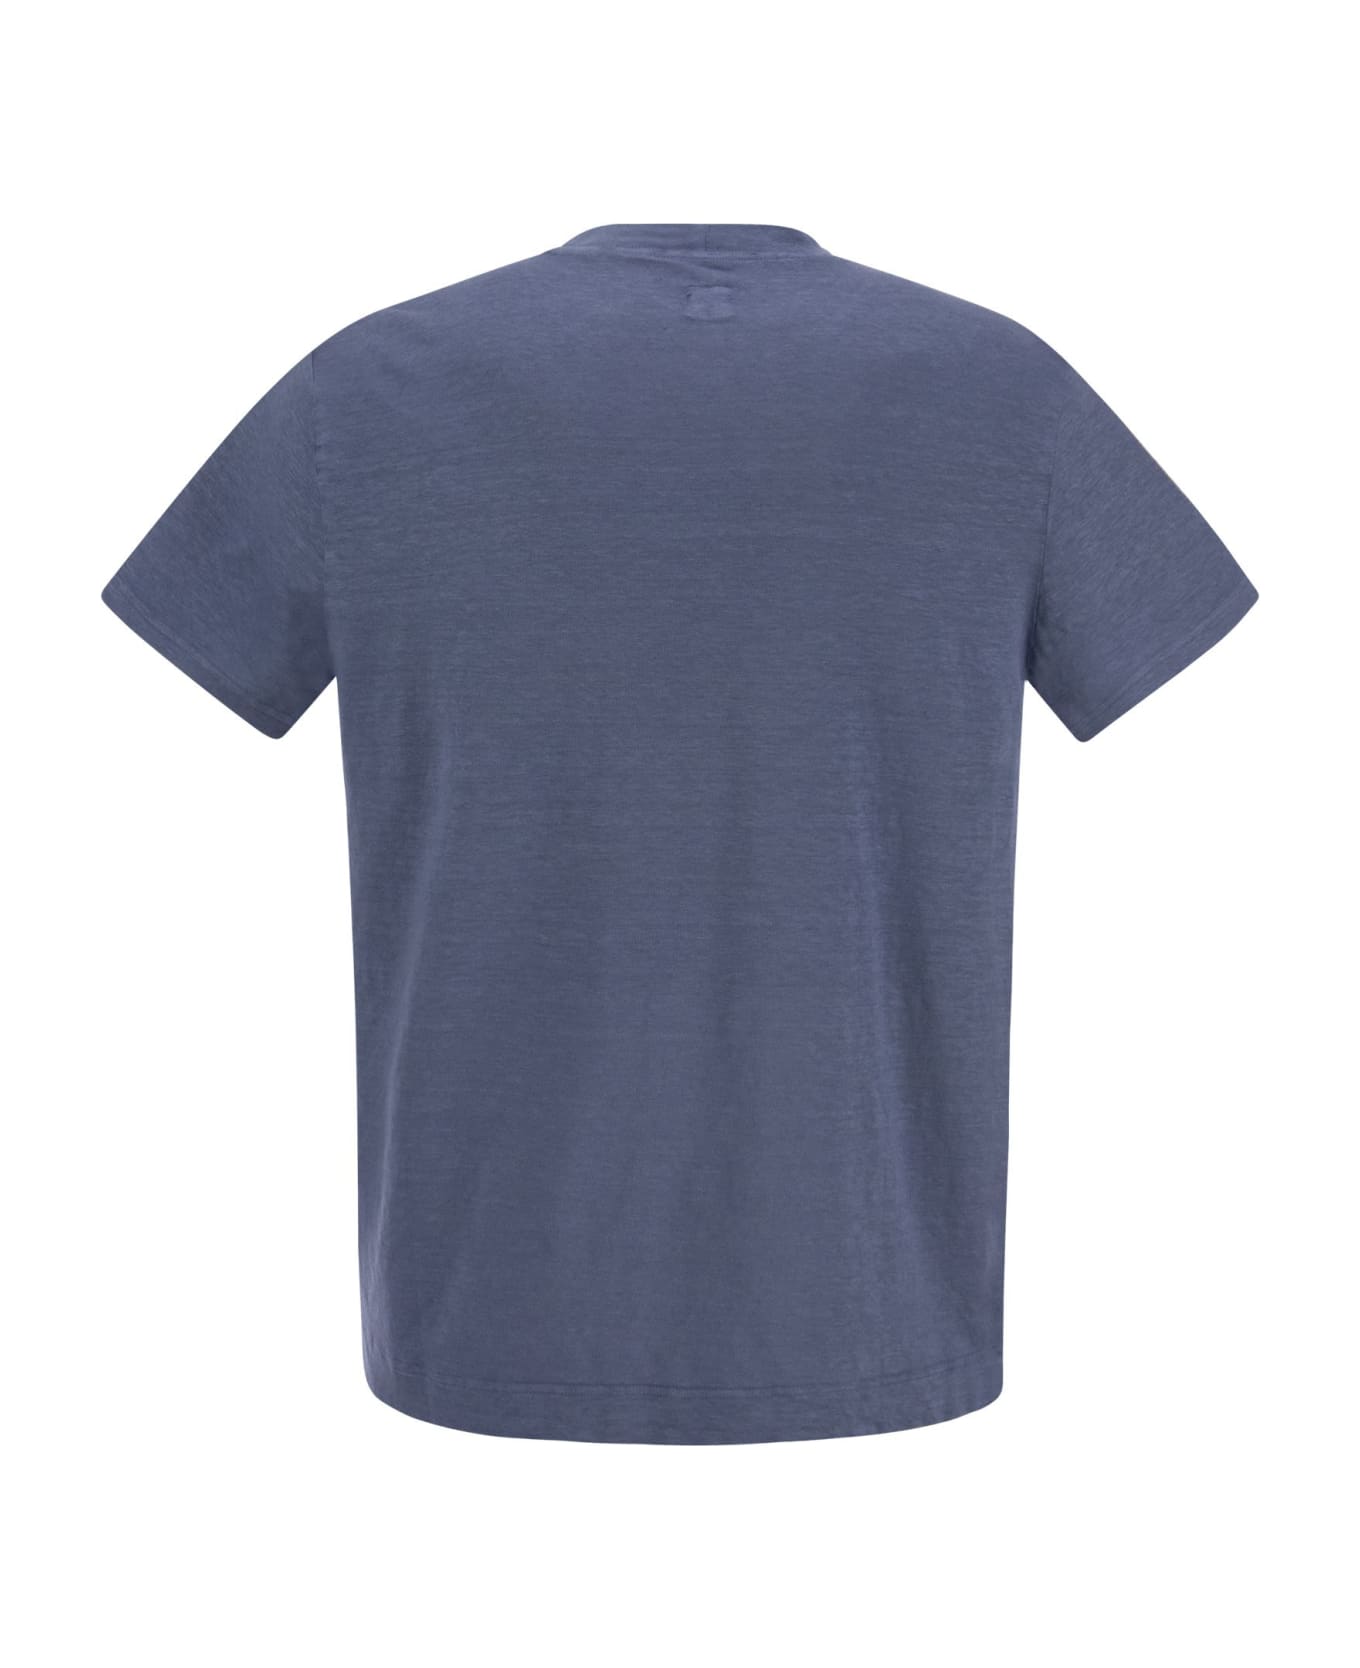 Fedeli Exreme - Linen Flex T-shirt - Avio シャツ